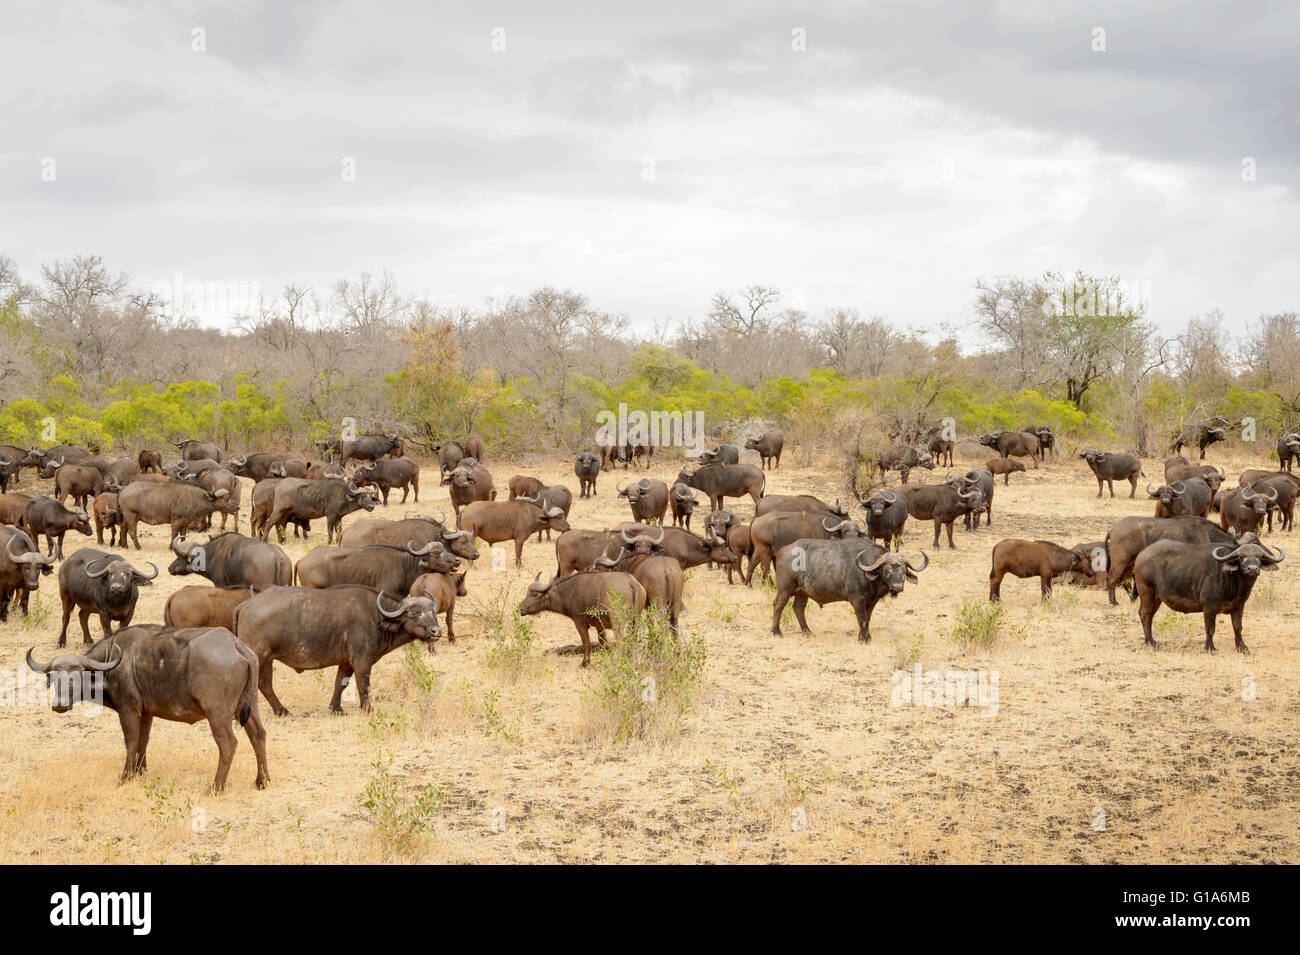 La manada de búfalos africanos (Syncerus caffer) en un día nublado, el parque nacional Kruger, Sudáfrica Foto de stock